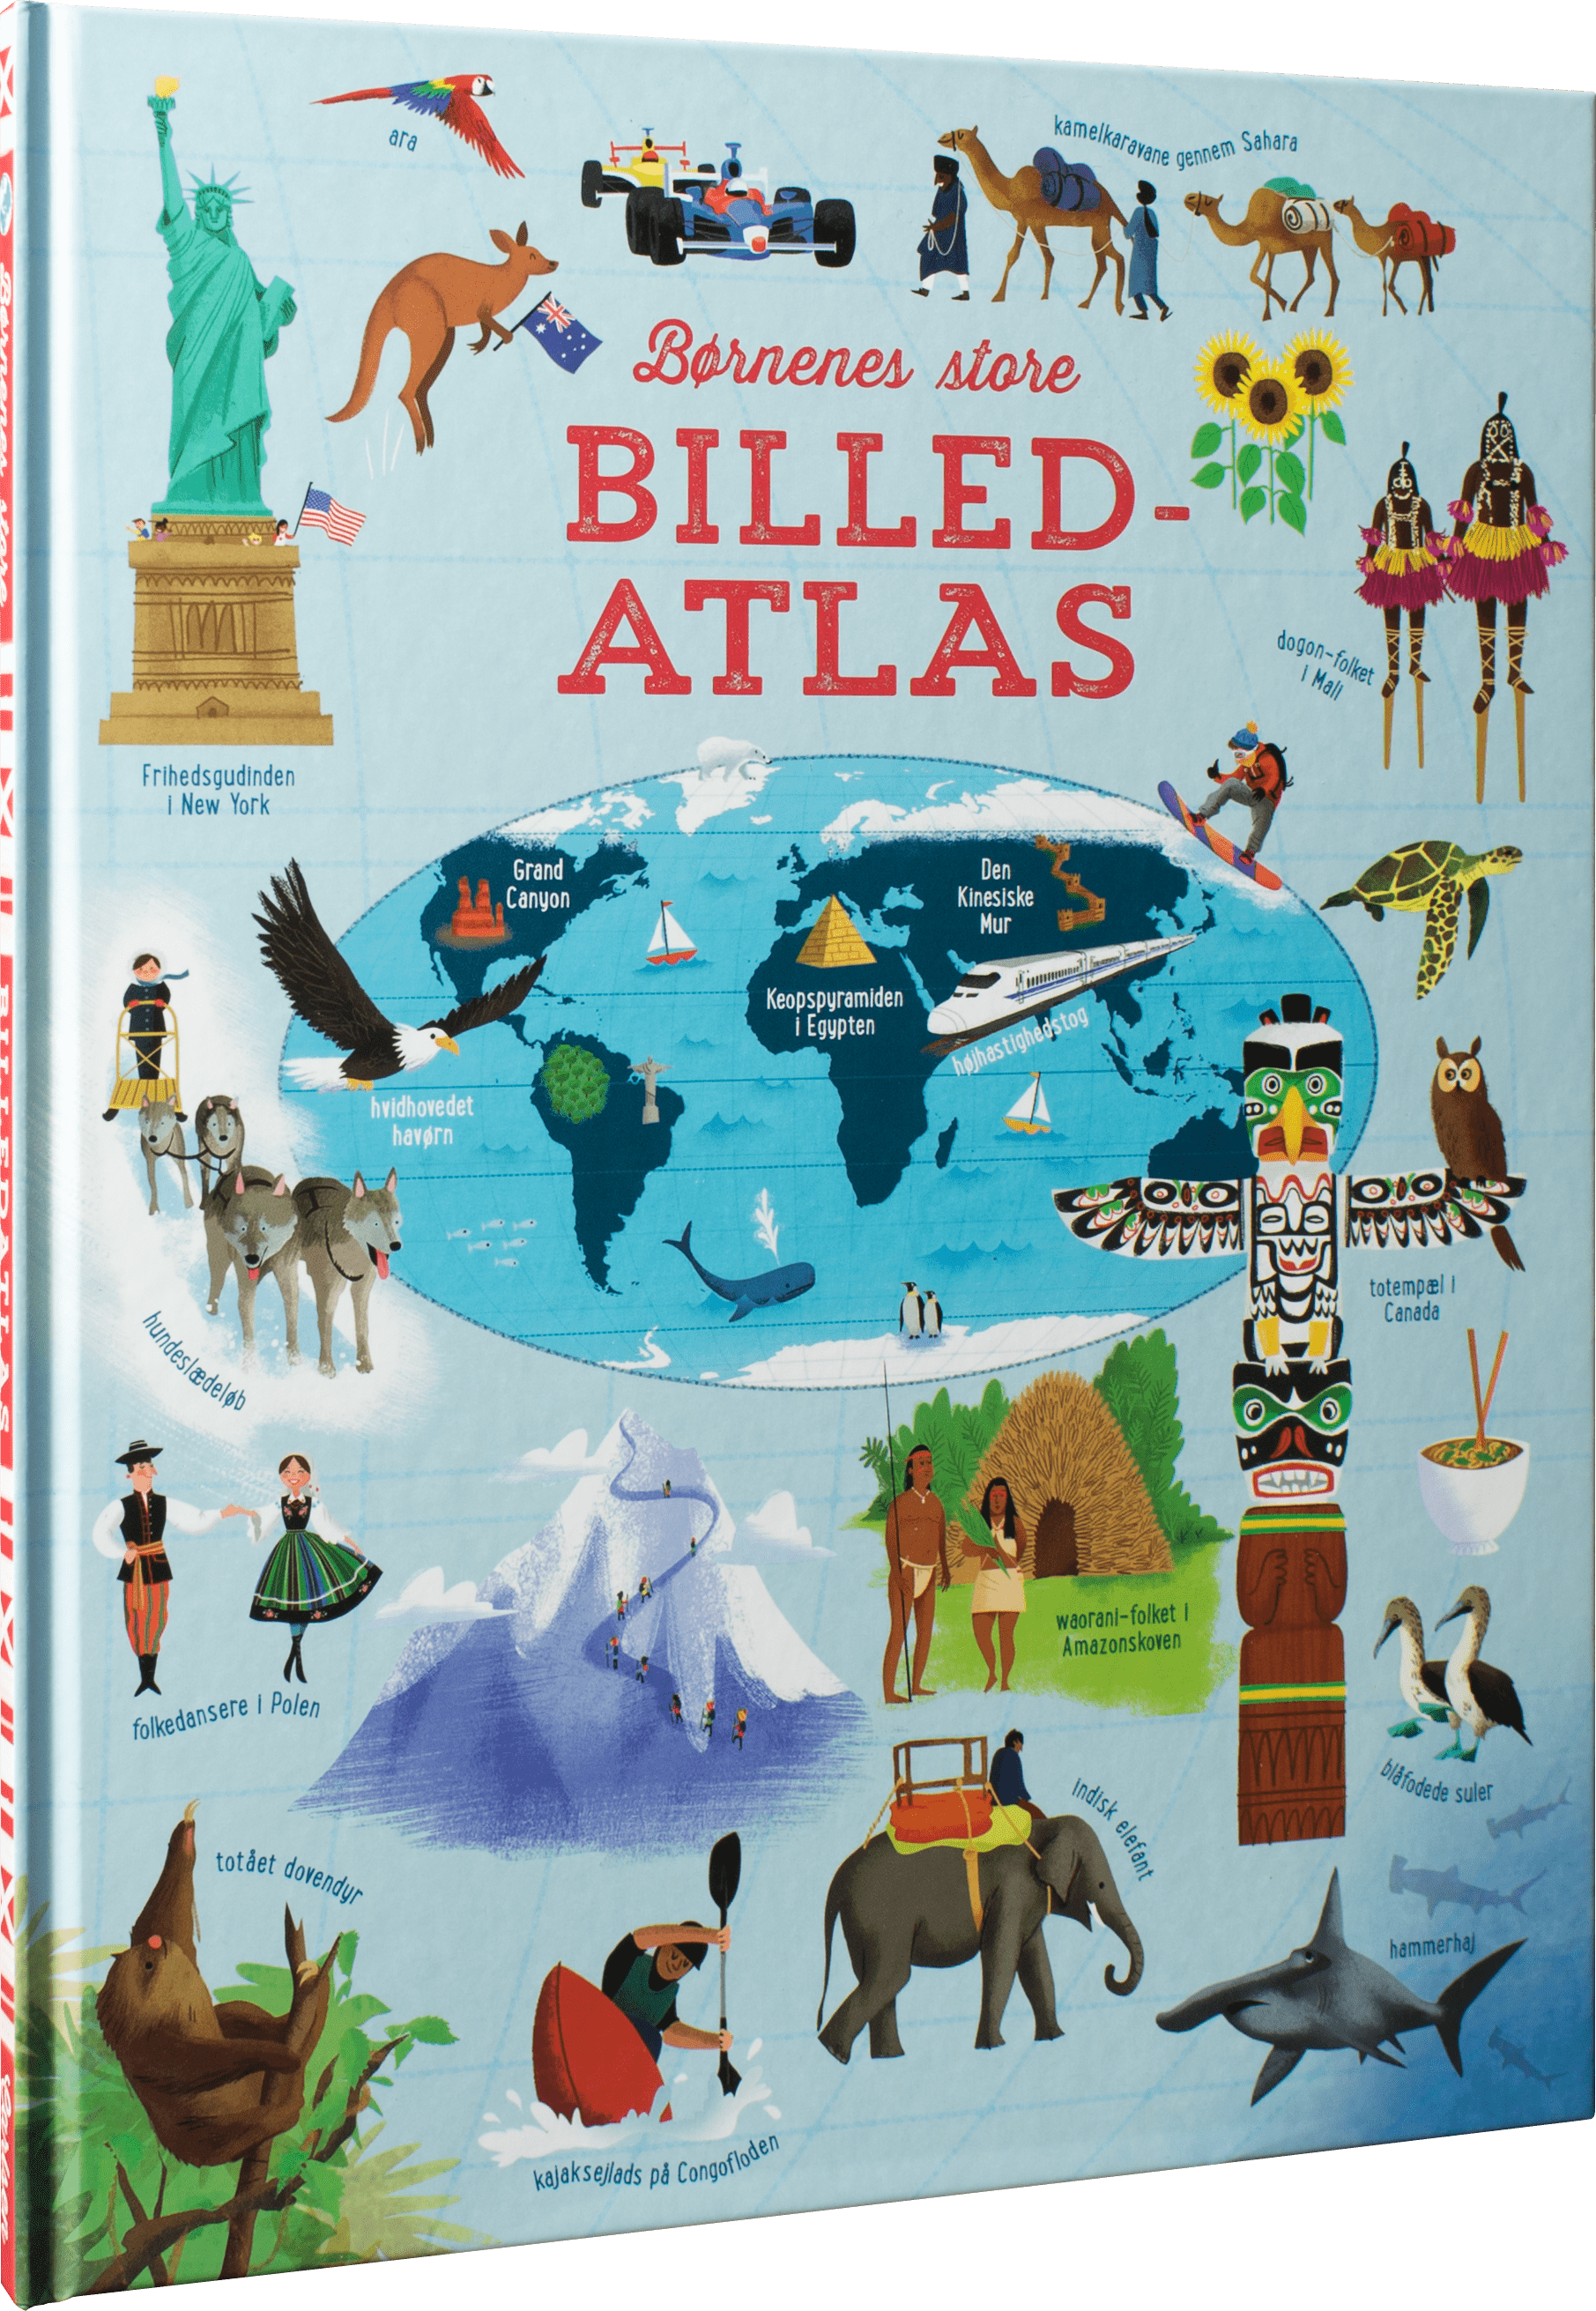 Børnenes store billedatlas, atlas, børnebøger, julegaver 